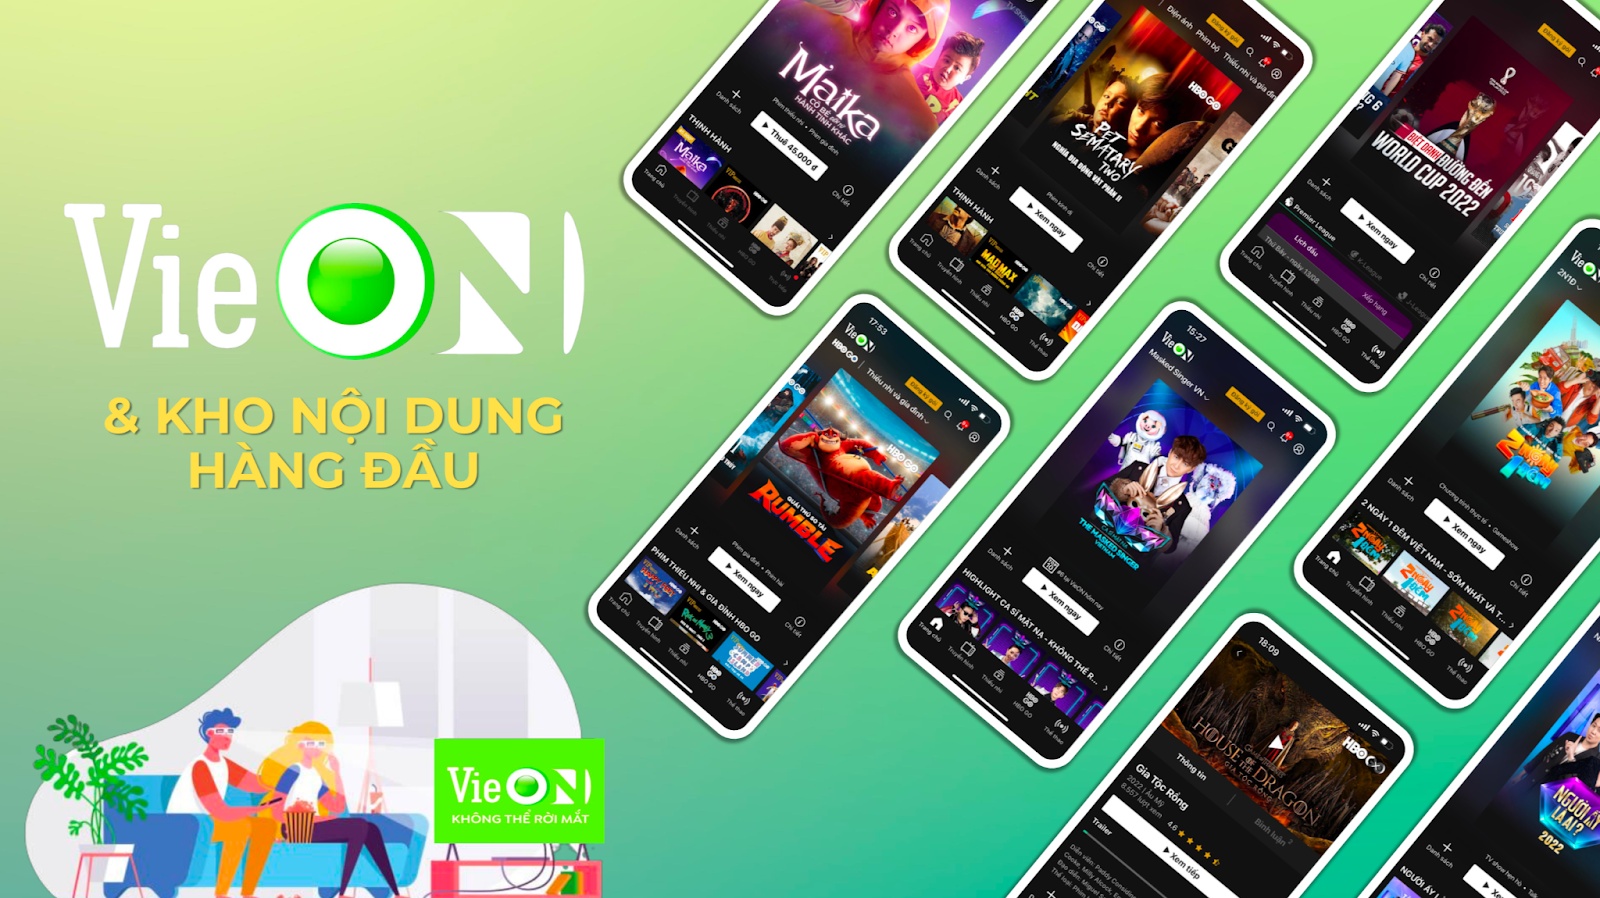 App VieON - Ứng dụng xem phim, giải trí hàng đầu hiện nay